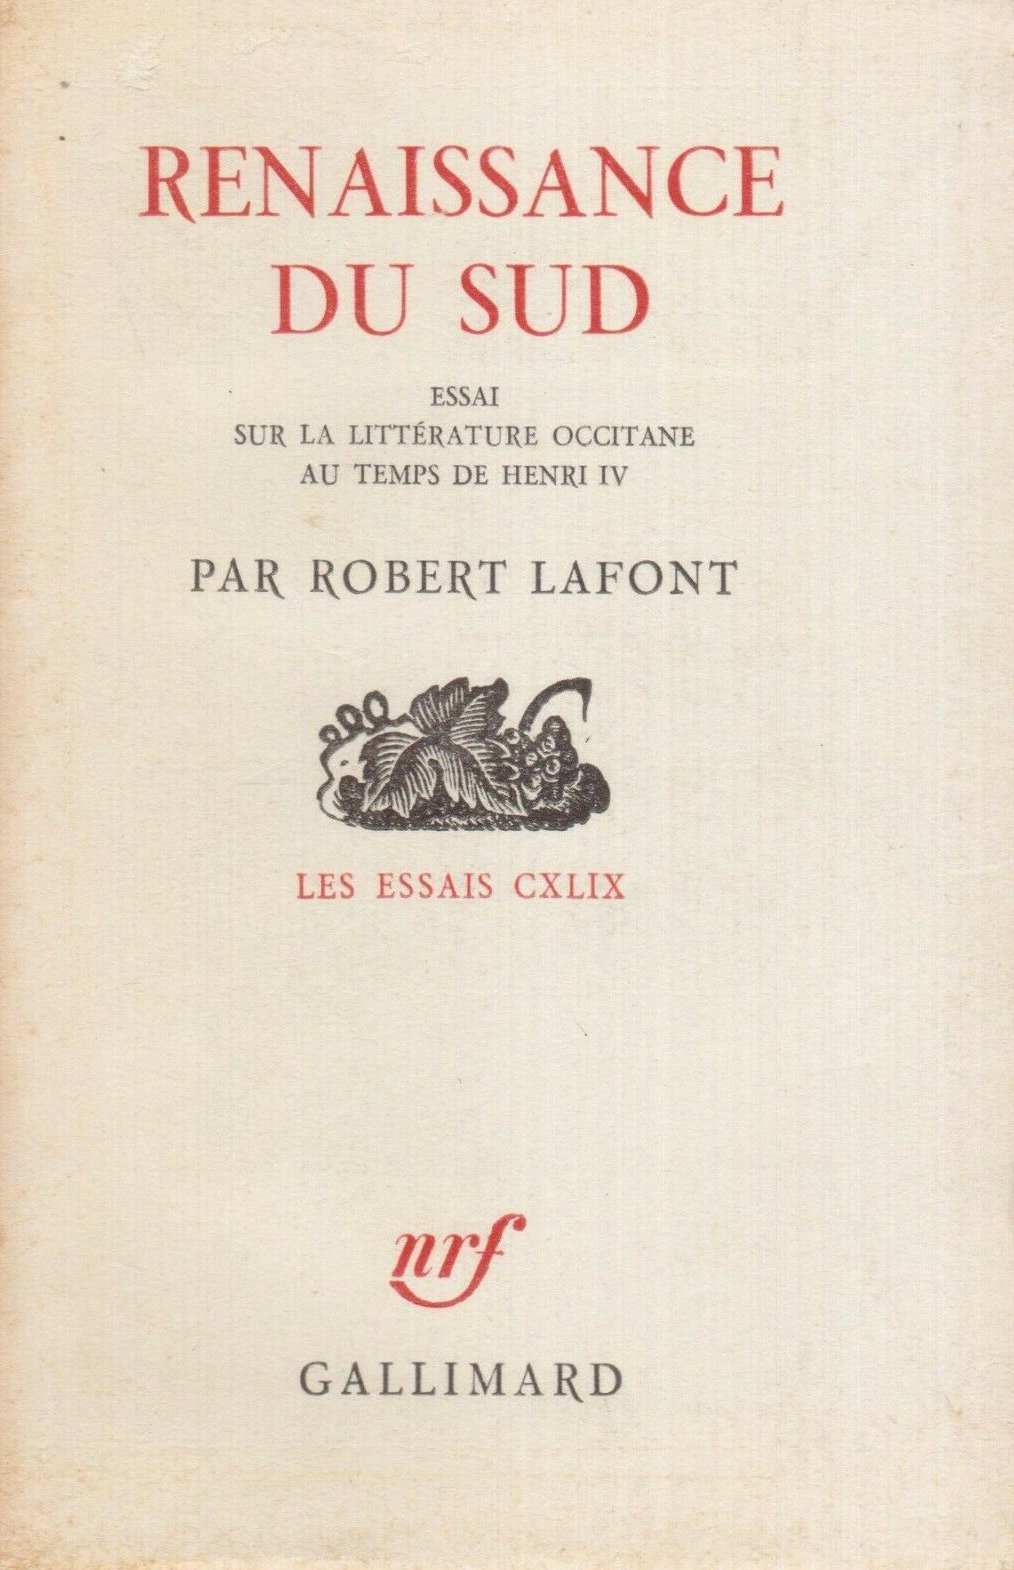 Renaissance du Sud, Robèrt Lafont, Gallimard